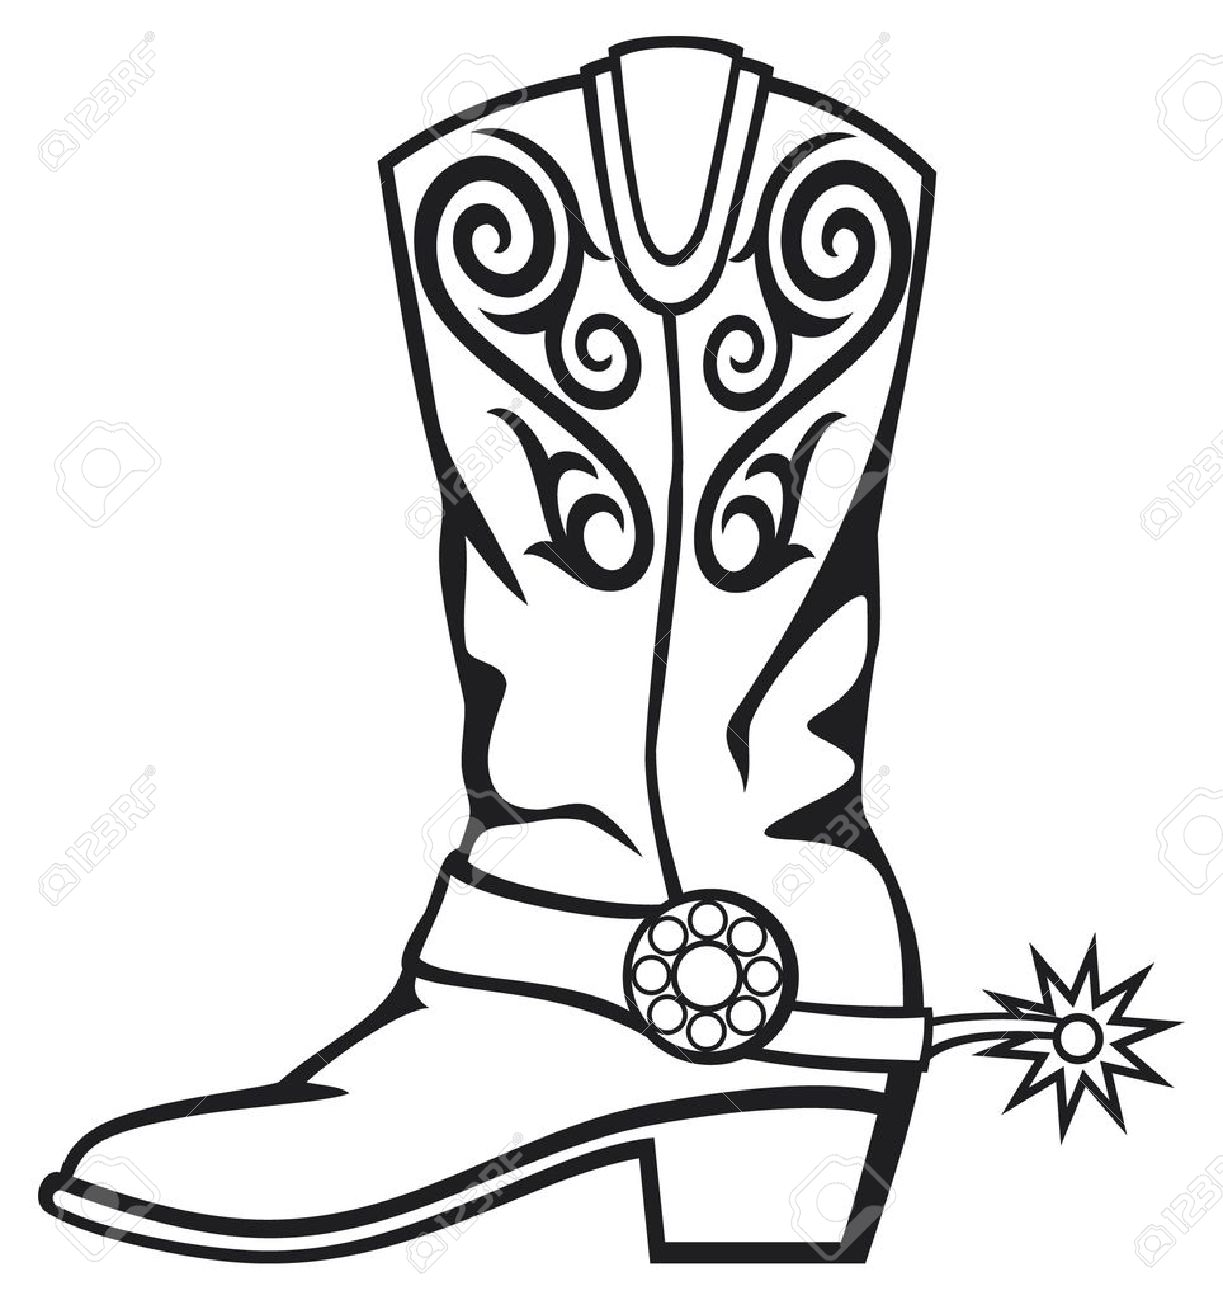 Cowboy boot rodio clip art we